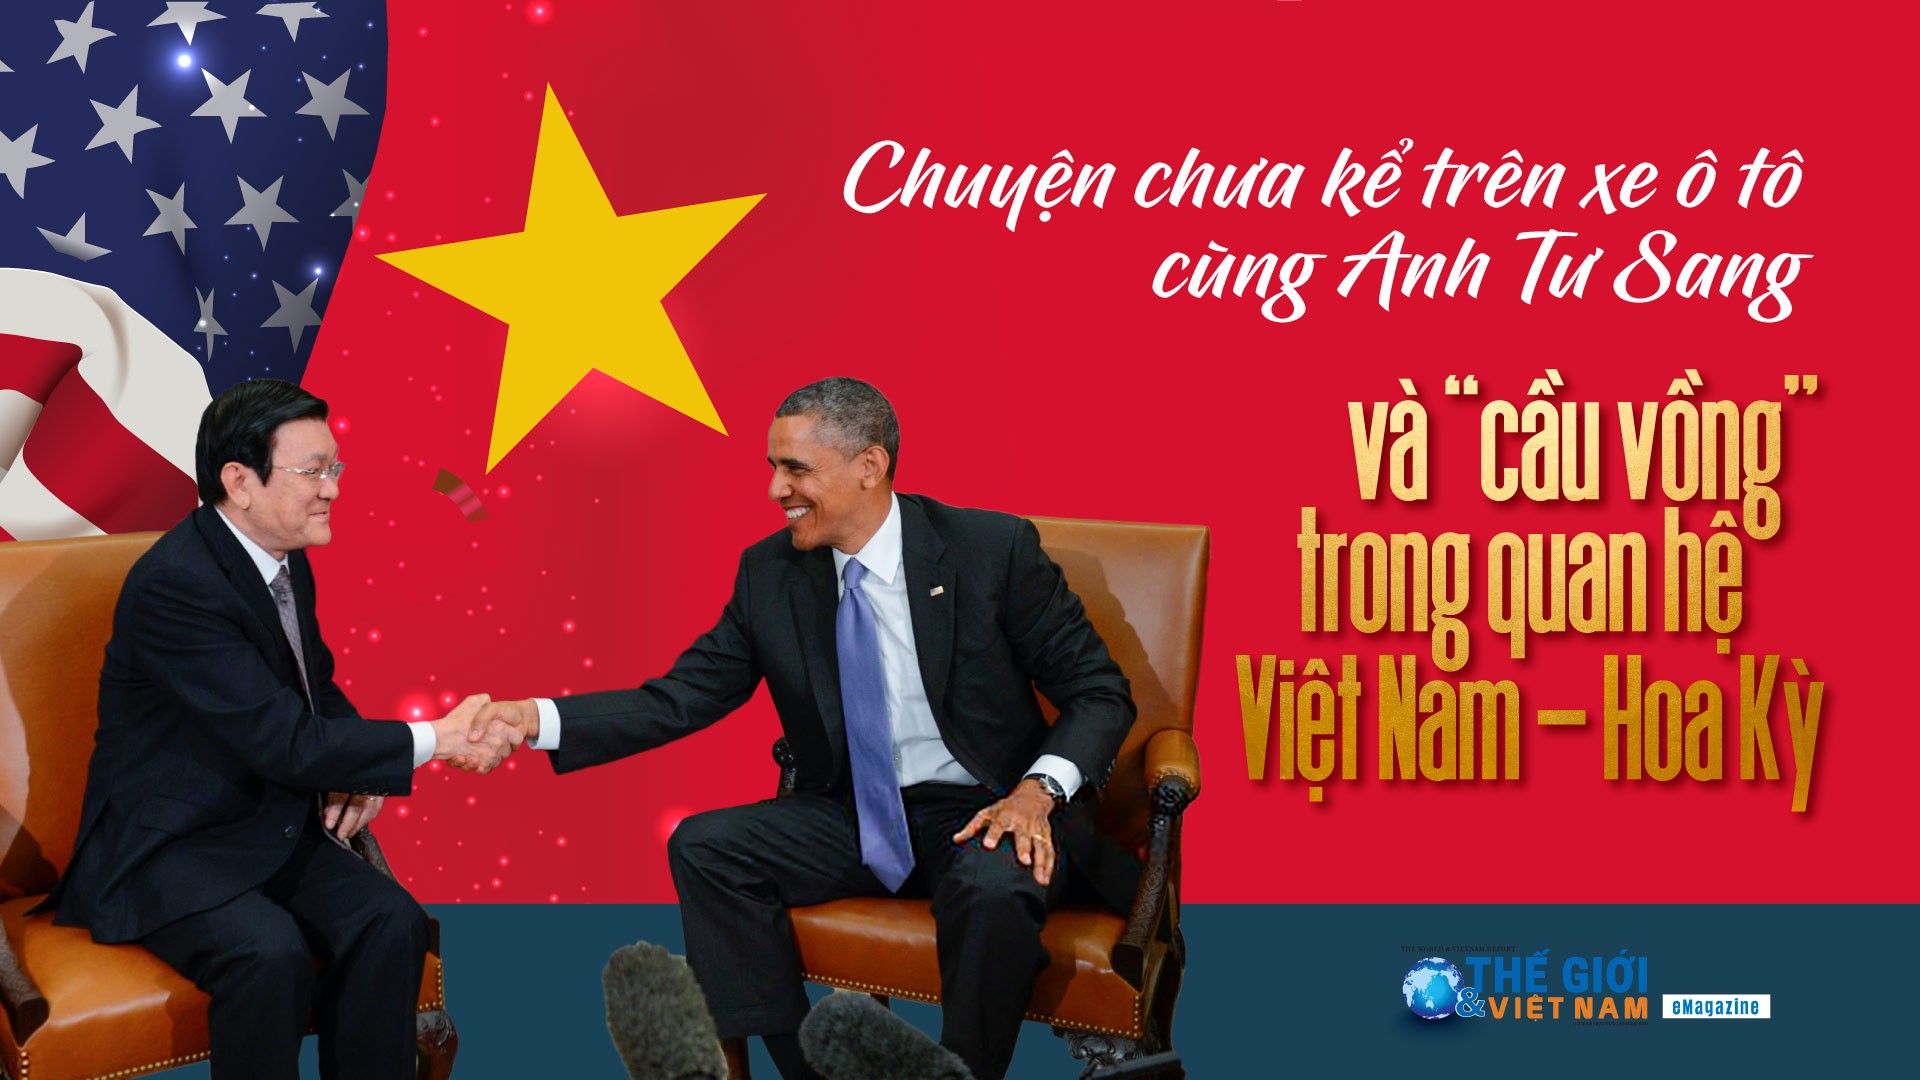 Chuyện chưa kể trên xe ô tô cùng Anh Tư Sang và 'cầu vồng' trong quan hệ Việt Nam-Hoa Kỳ